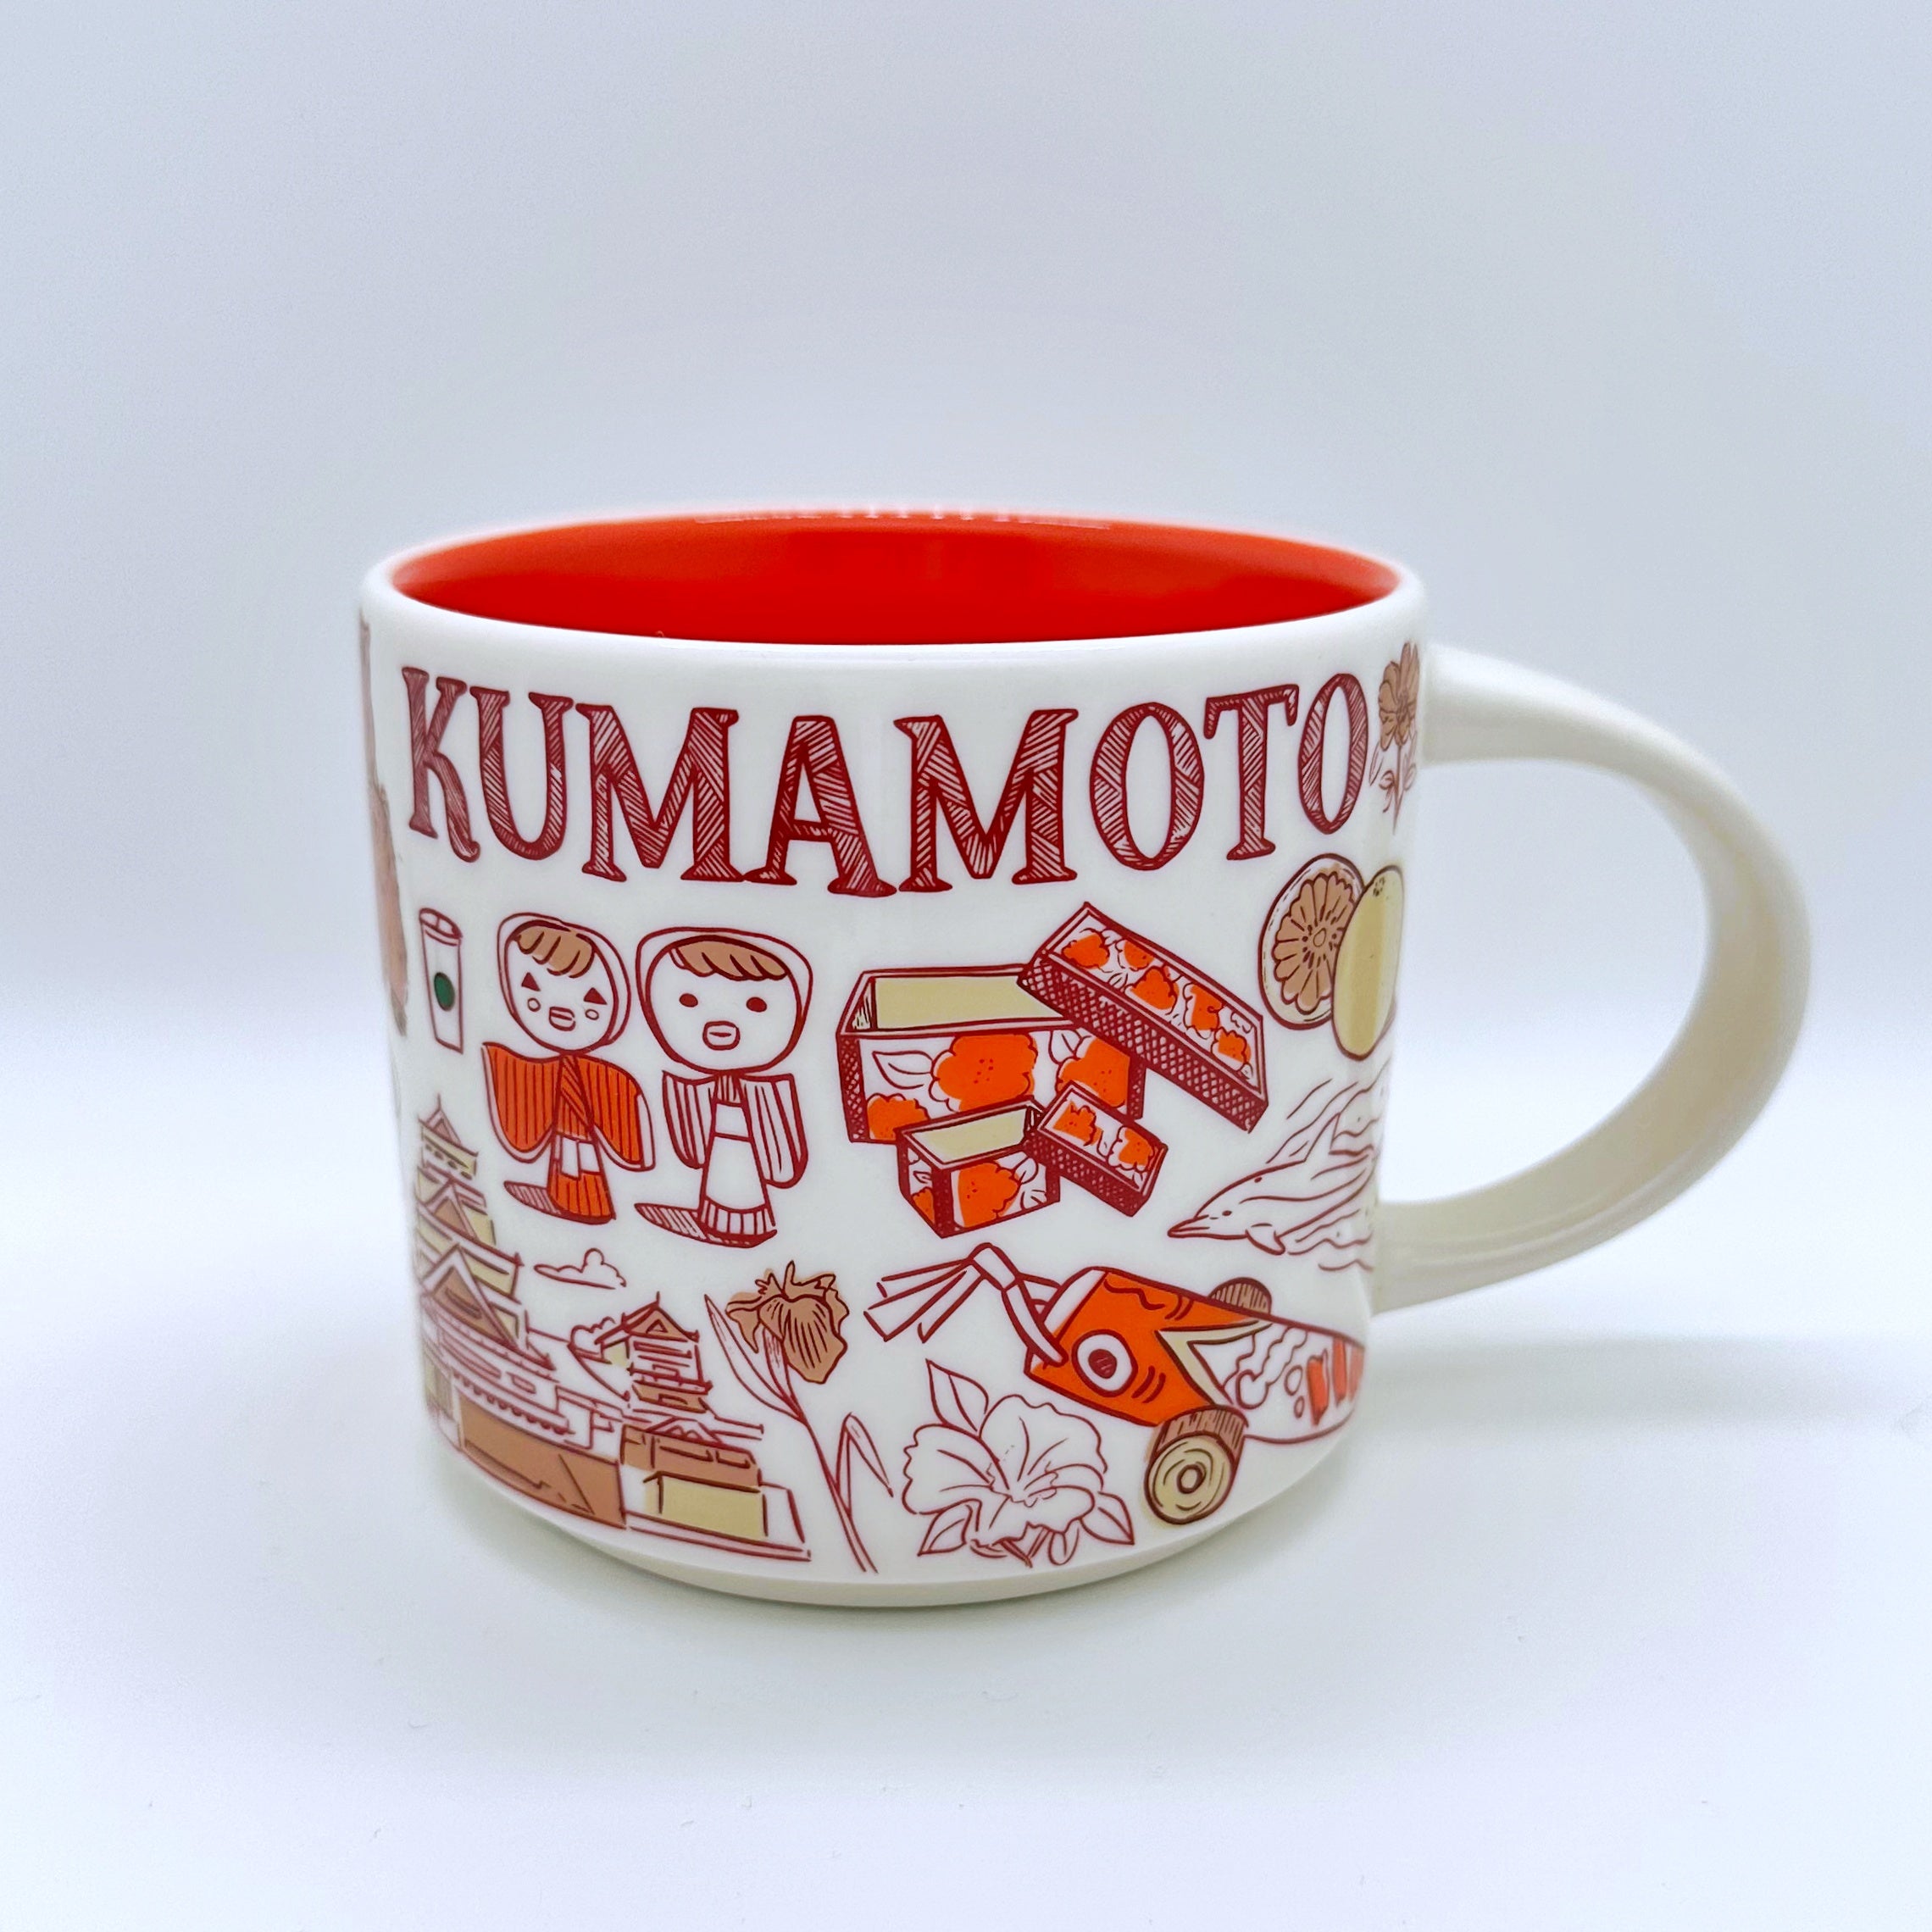 Kumamoto City Kaffee Tasse